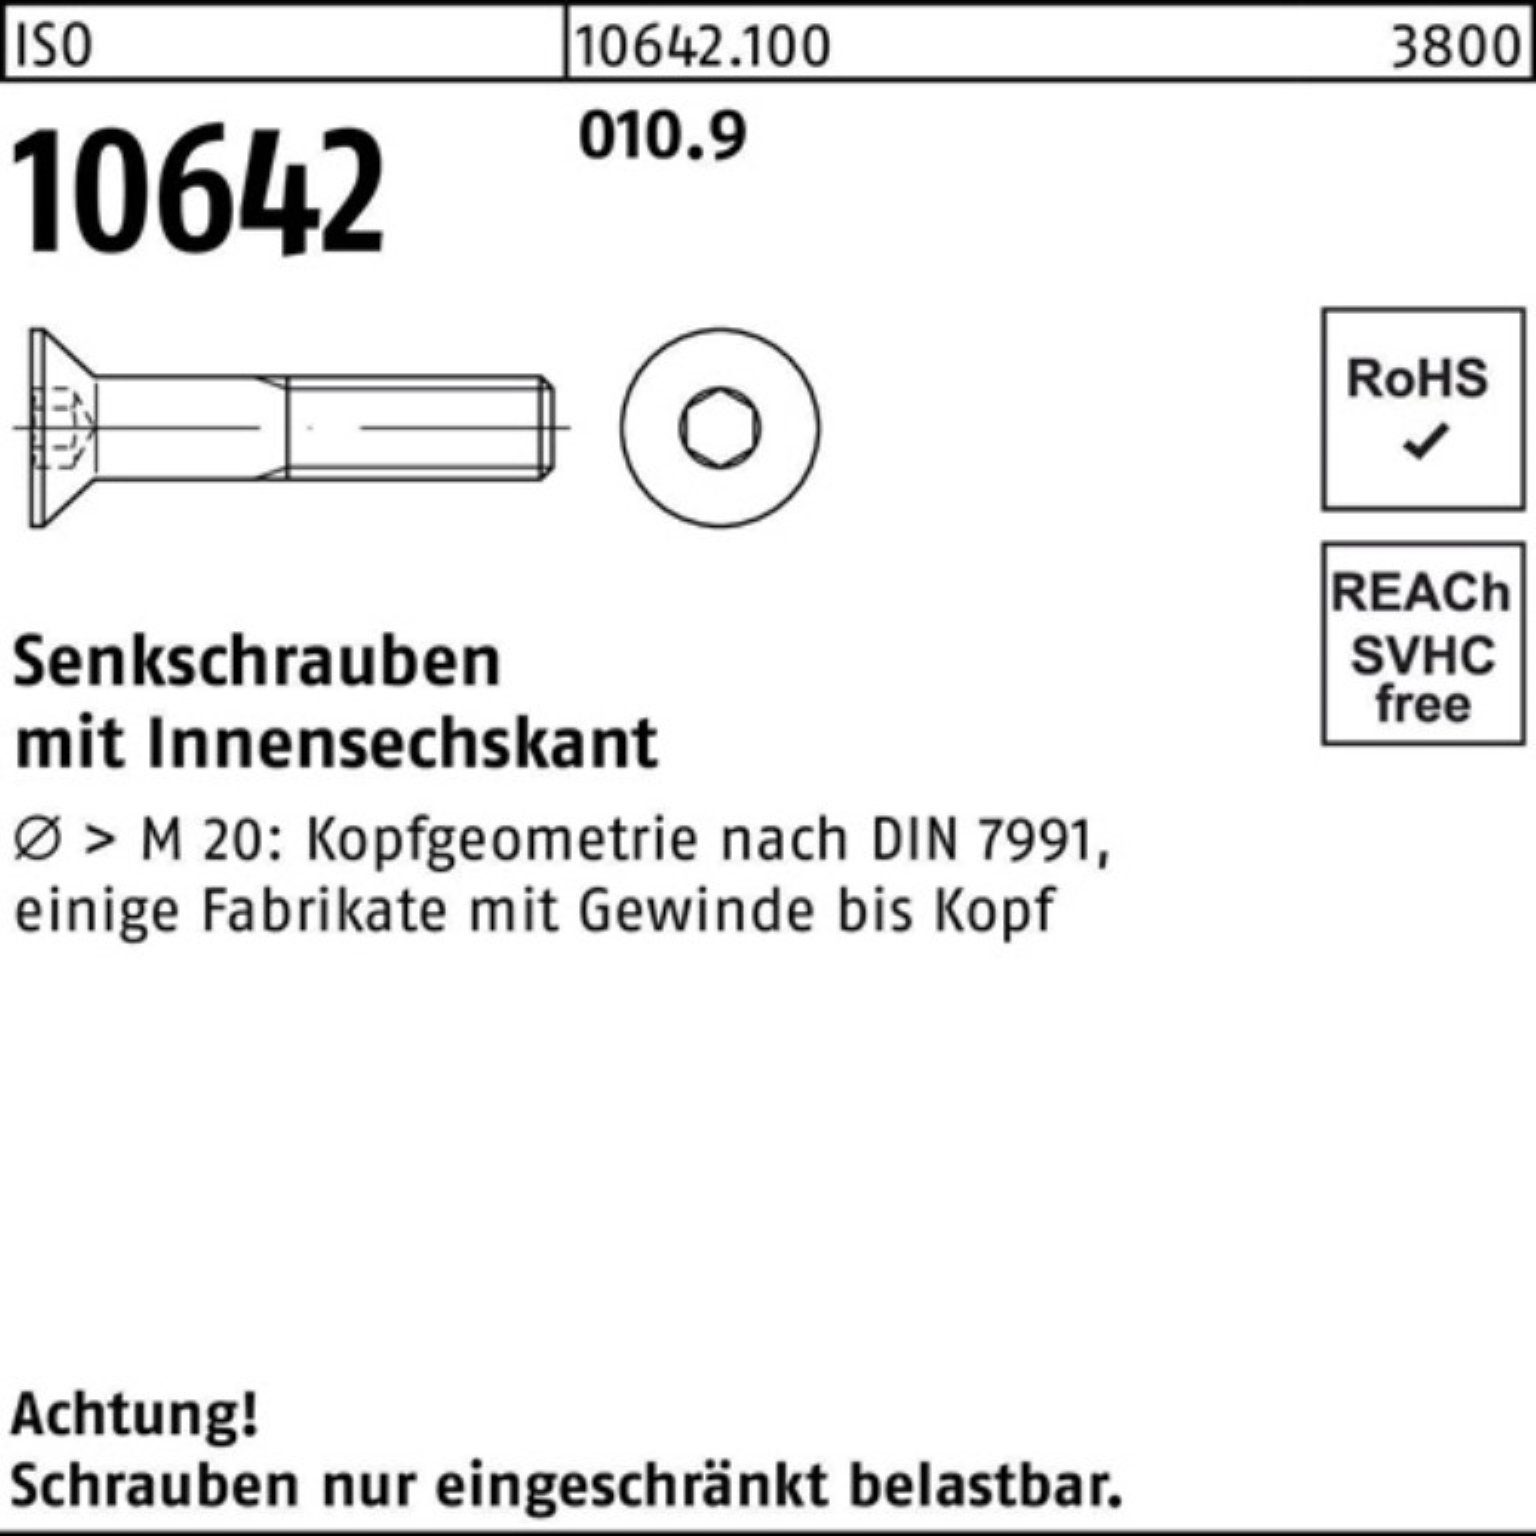 IS Reyher Pack Stück M5x 500 10642 Senkschraube 010.9 ISO 18 Senkschraube Innen-6kt 500er